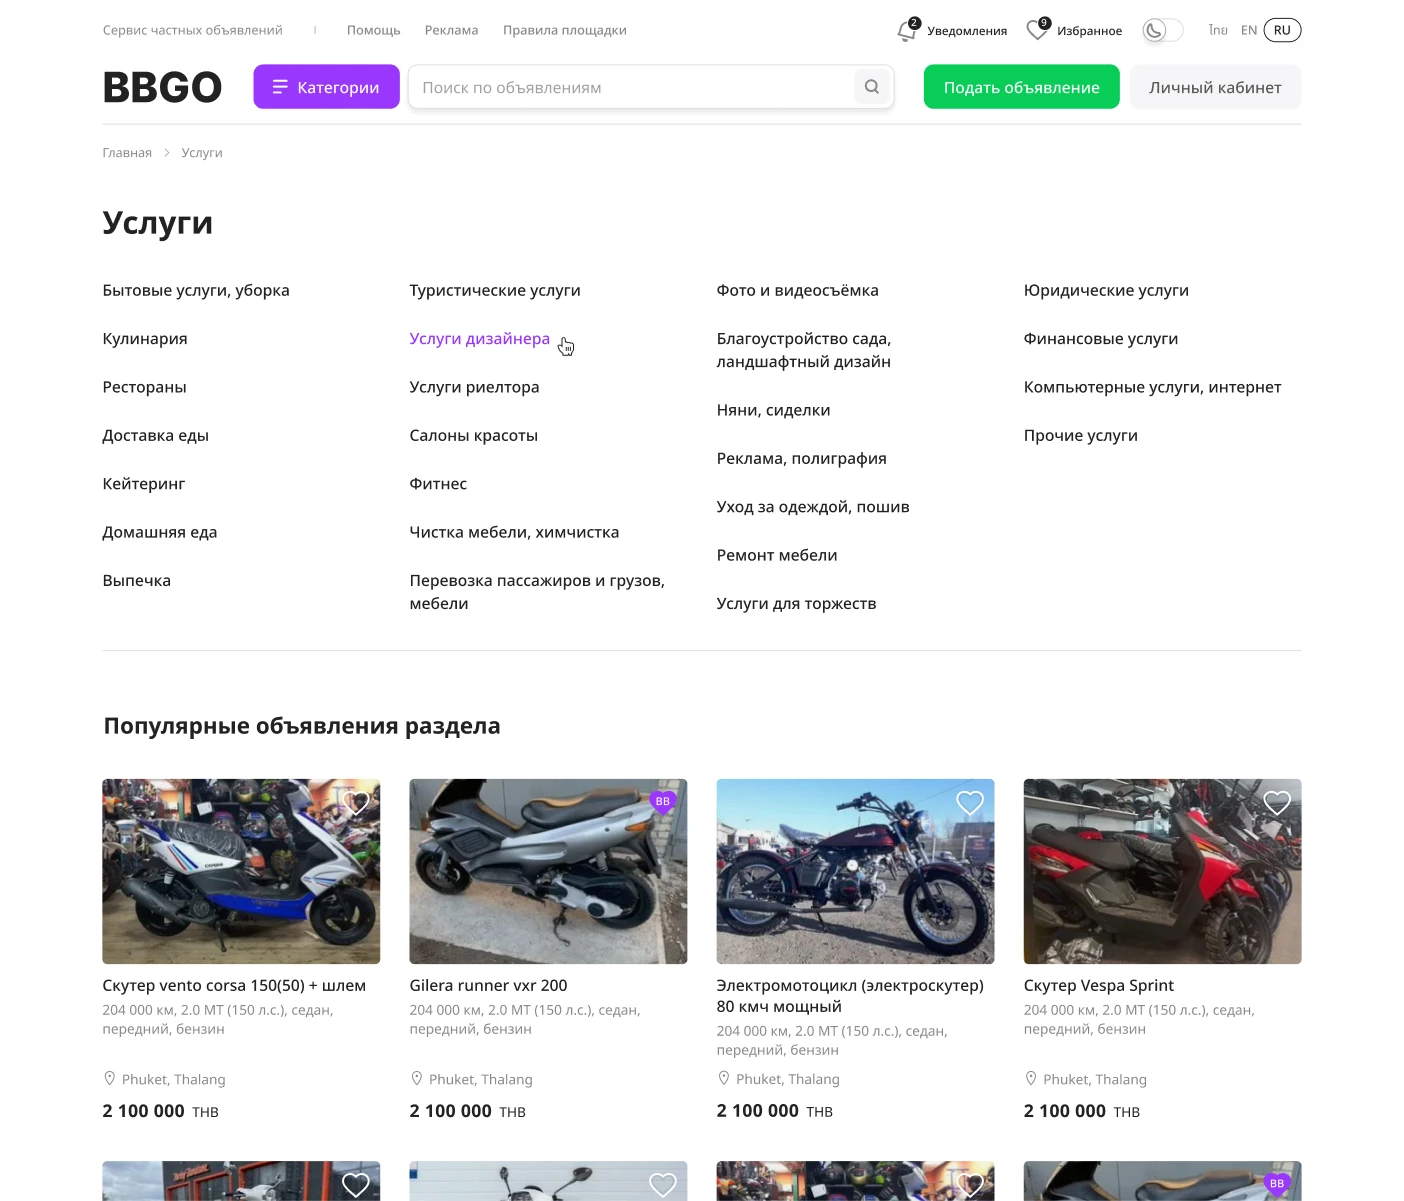 BBGO — Разделы нового сайта